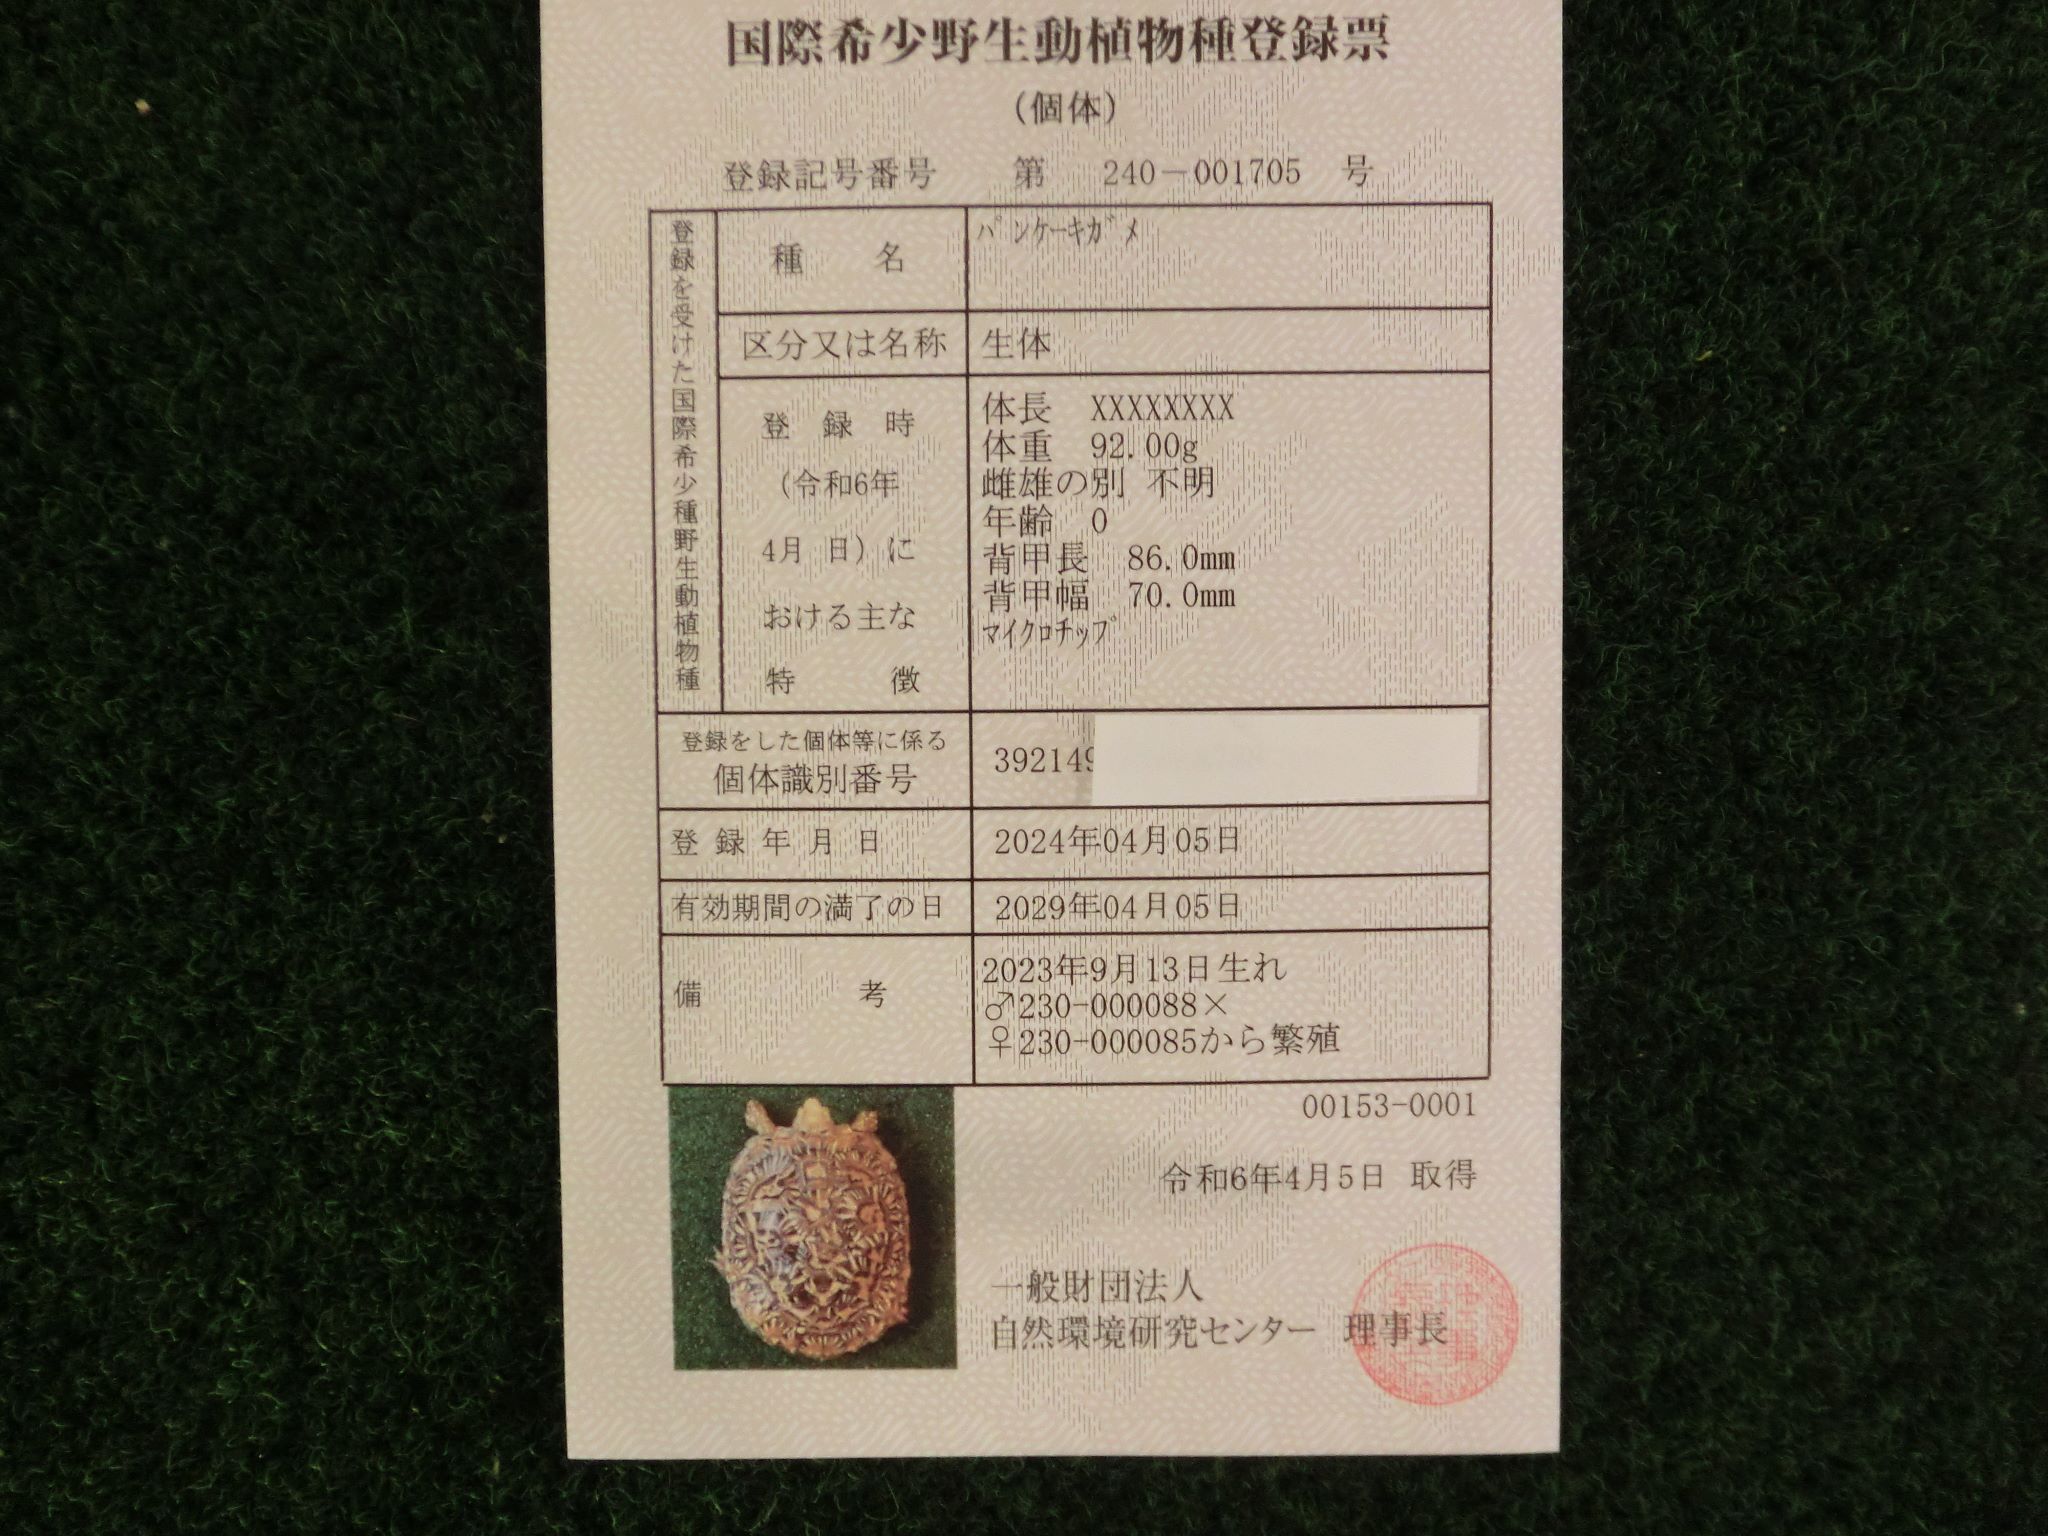 パンケーキリクガメ SMサイズ　07号 当店繁殖 登録票付き個体画像